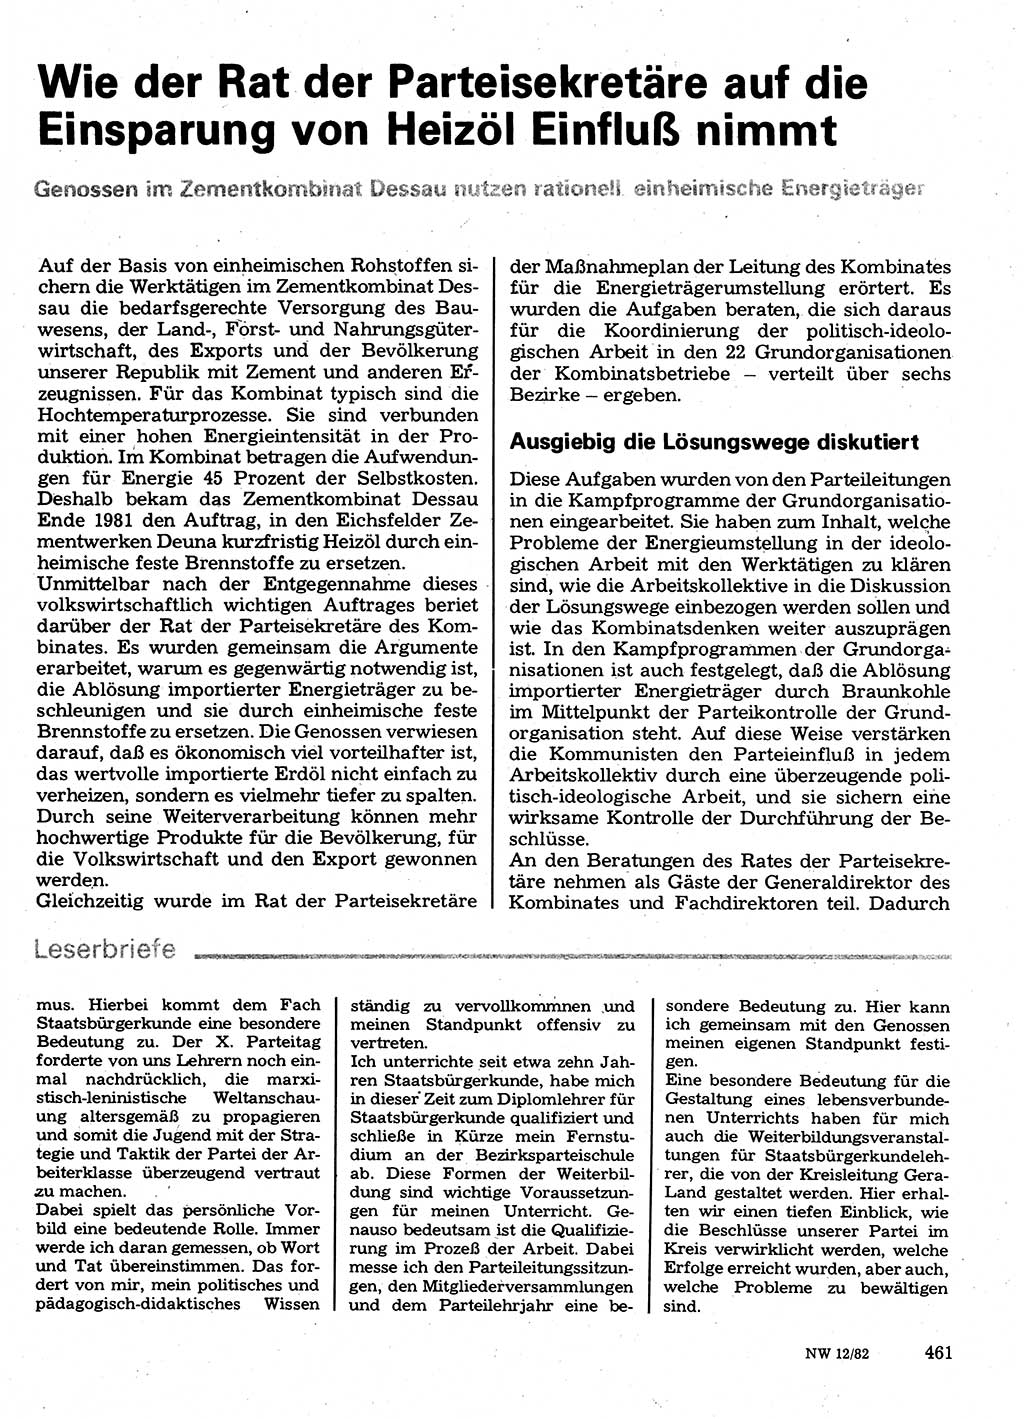 Neuer Weg (NW), Organ des Zentralkomitees (ZK) der SED (Sozialistische Einheitspartei Deutschlands) für Fragen des Parteilebens, 37. Jahrgang [Deutsche Demokratische Republik (DDR)] 1982, Seite 461 (NW ZK SED DDR 1982, S. 461)